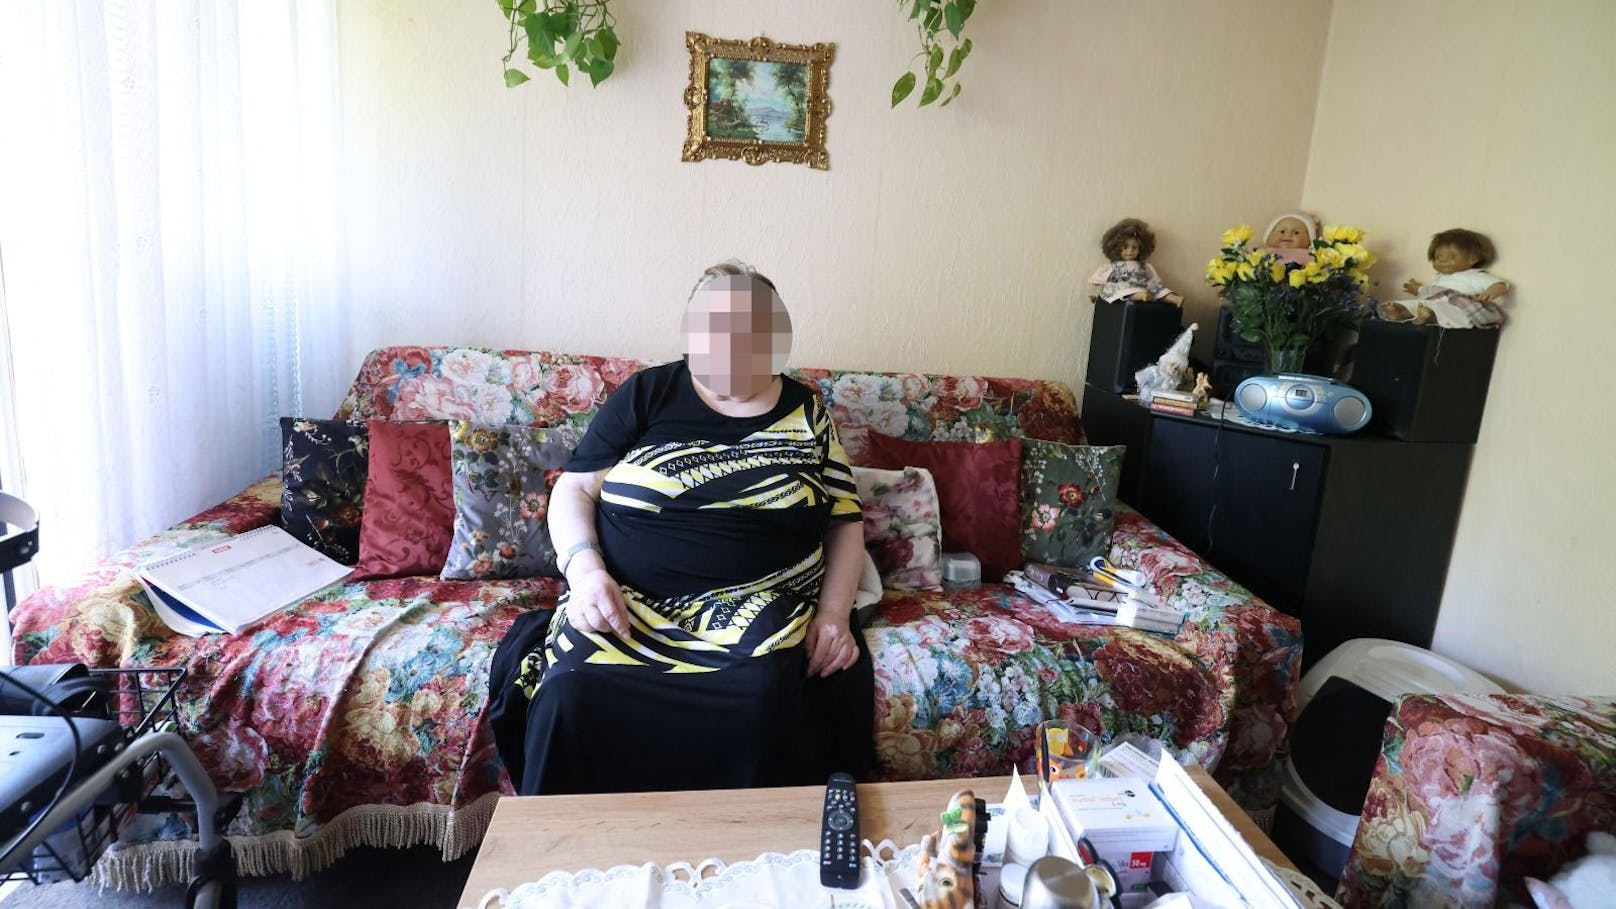 Adelheid (81) kann sich das Leben kaum mehr leisten. Nach 40 Jahren Arbeit lebt sie von einer kleinen Pension.